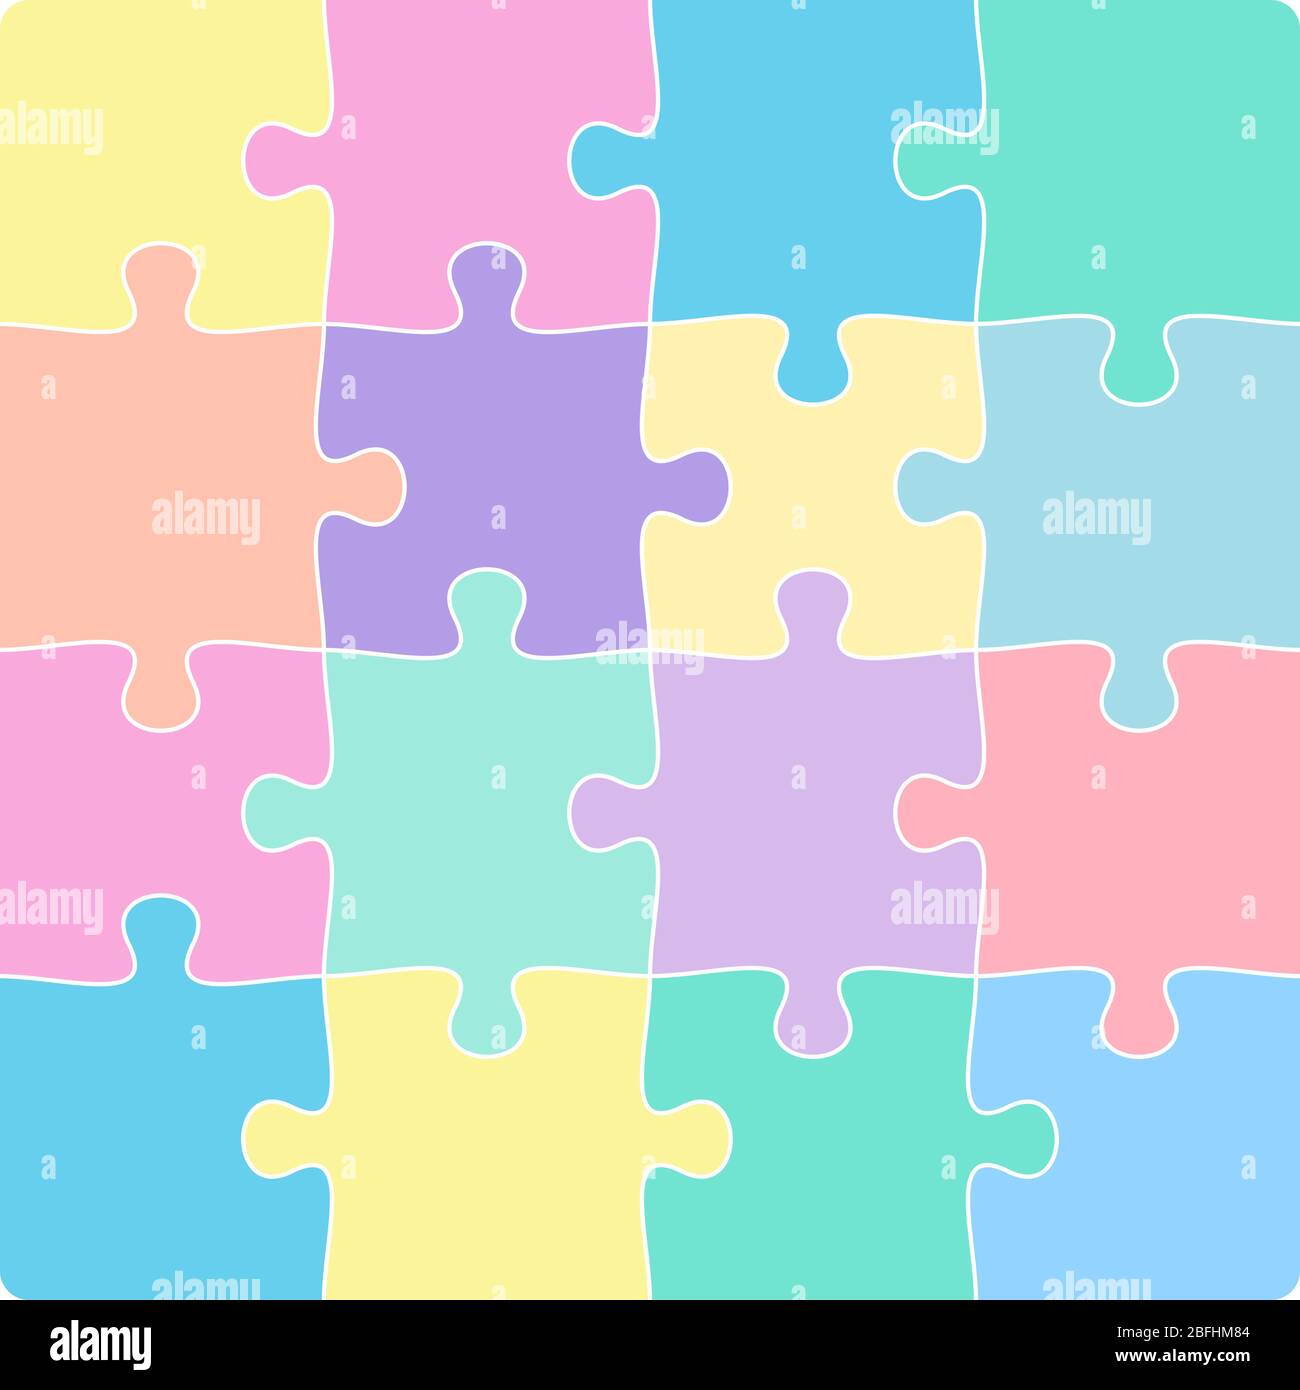 Bunte 4x4 Puzzle-Vorlage isoliert auf weißen Vektor-Illustration Stock Vektor